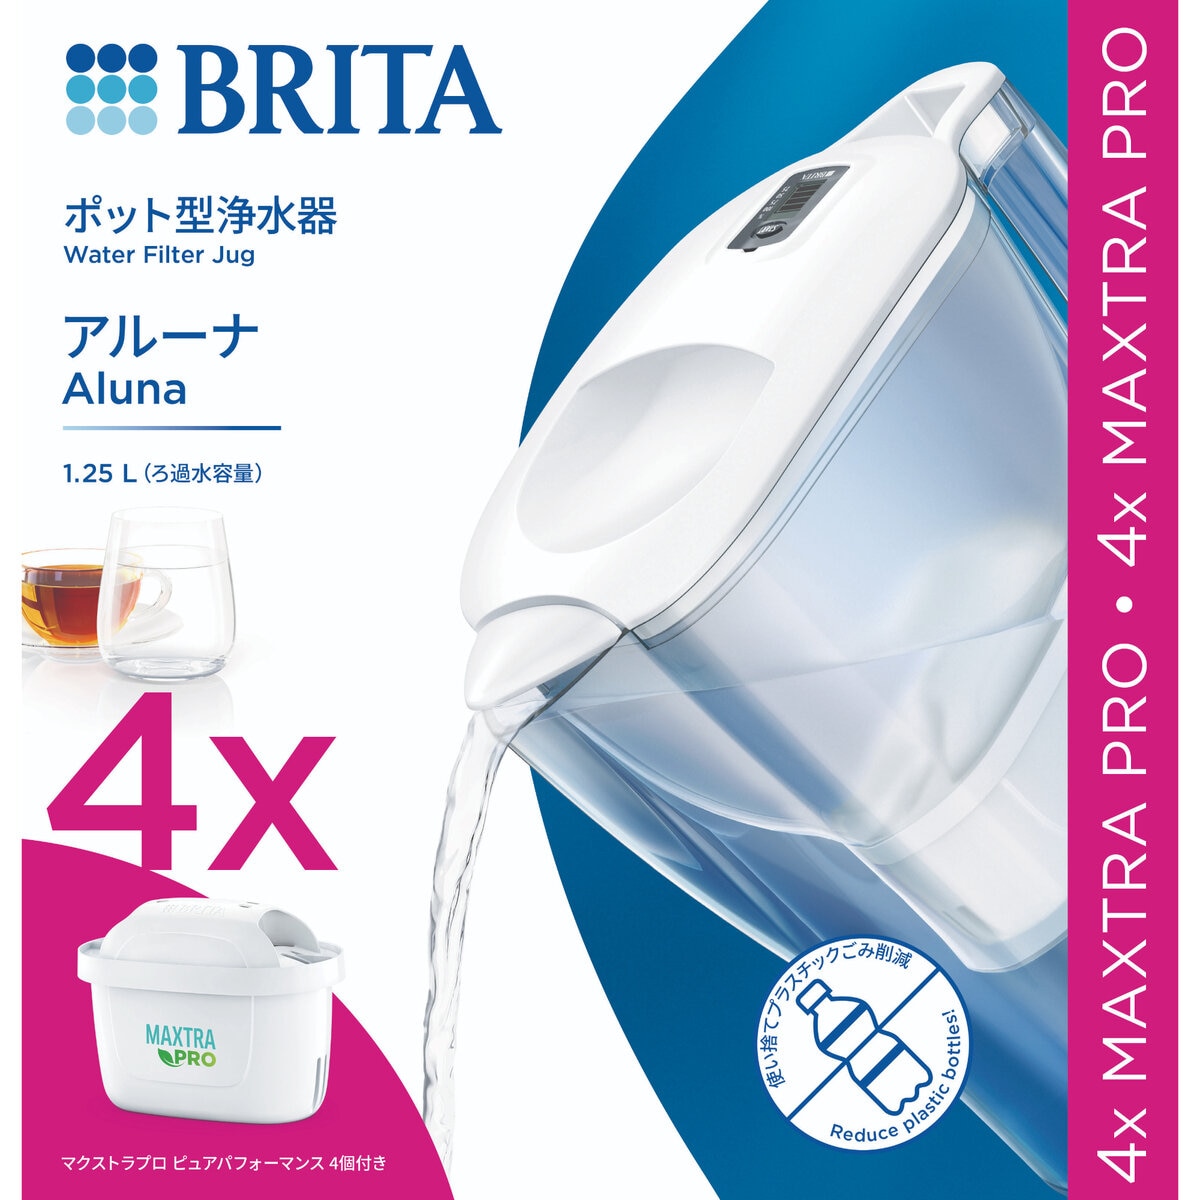 ブリタ ポット型浄水器 アルーナ マクストラプロ カートリッジ4個付き | Costco Japan